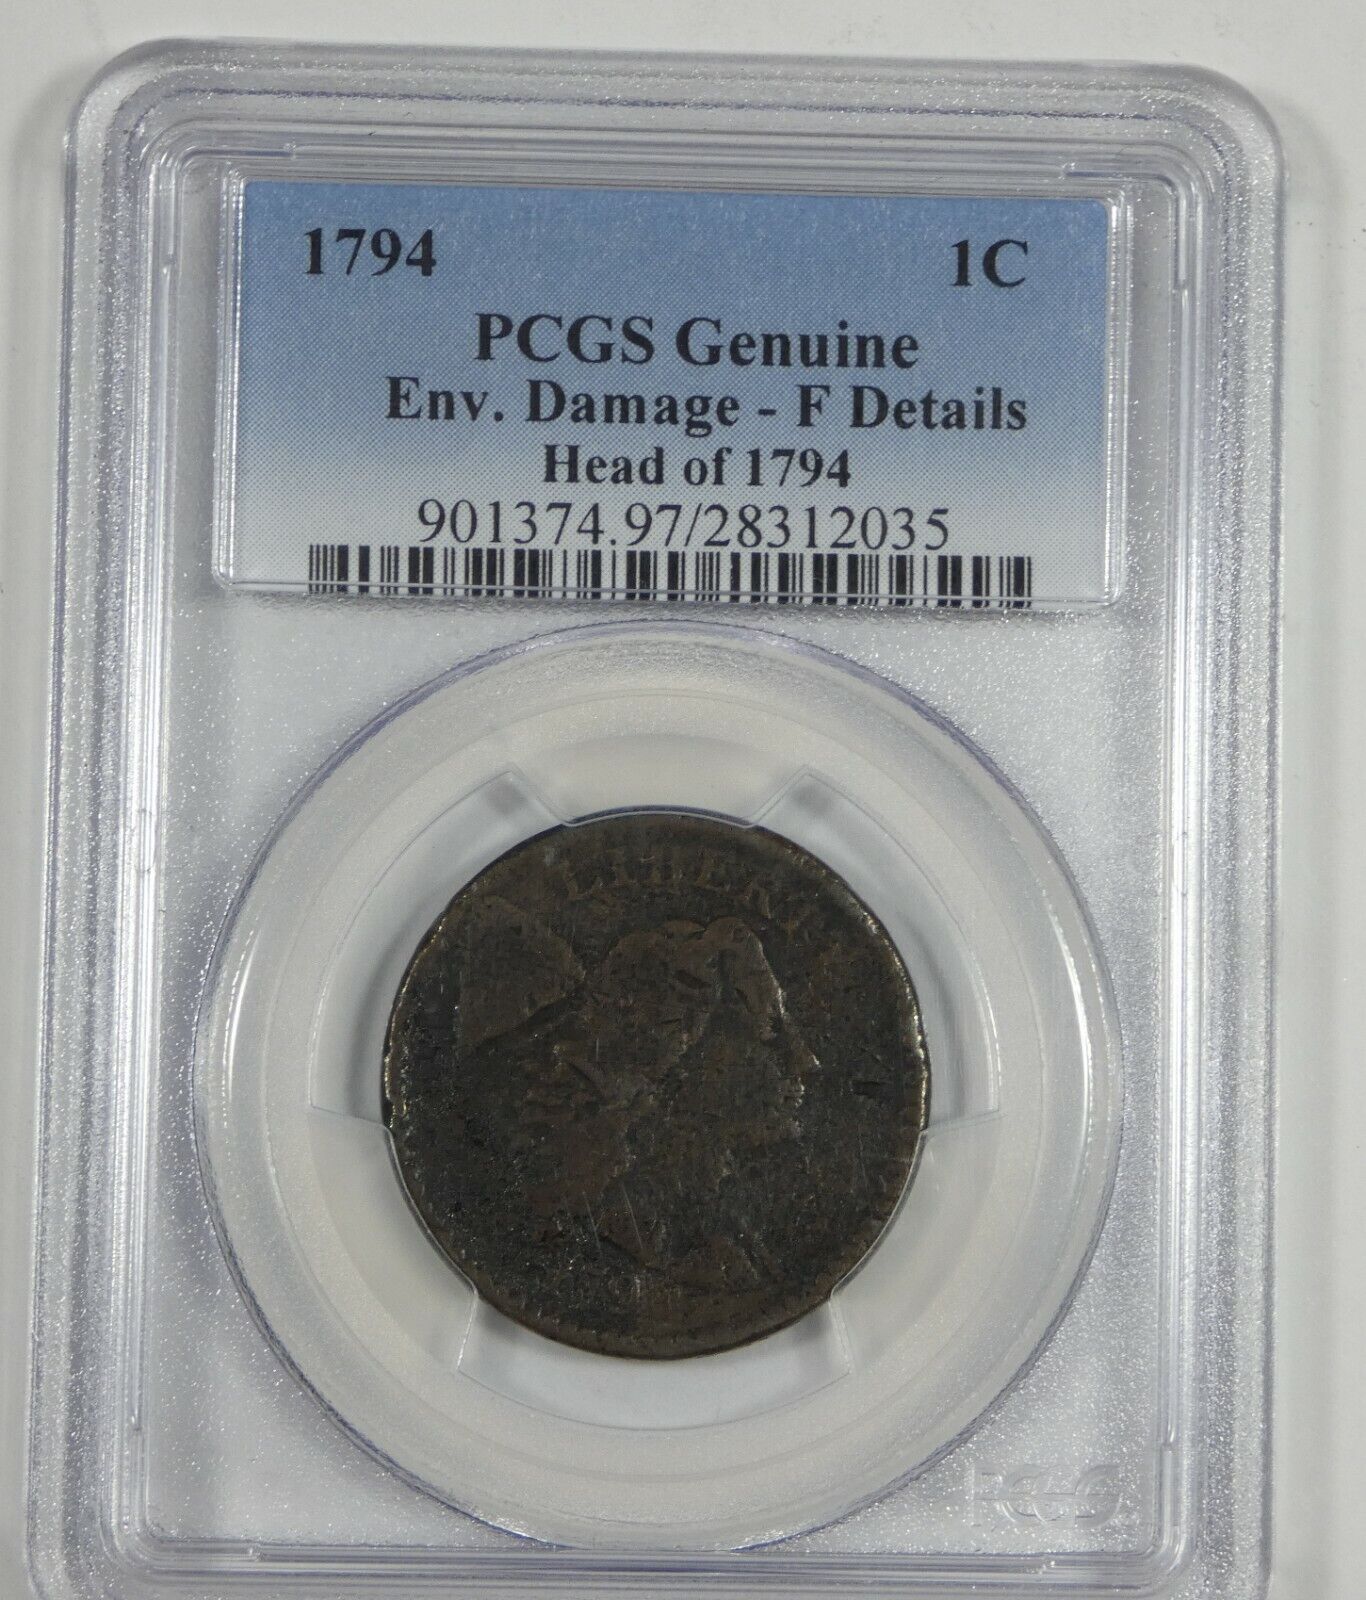 PCGS Genuine 1794 Head of 1794 Liberty Cap Large Cent FINE Details 1c